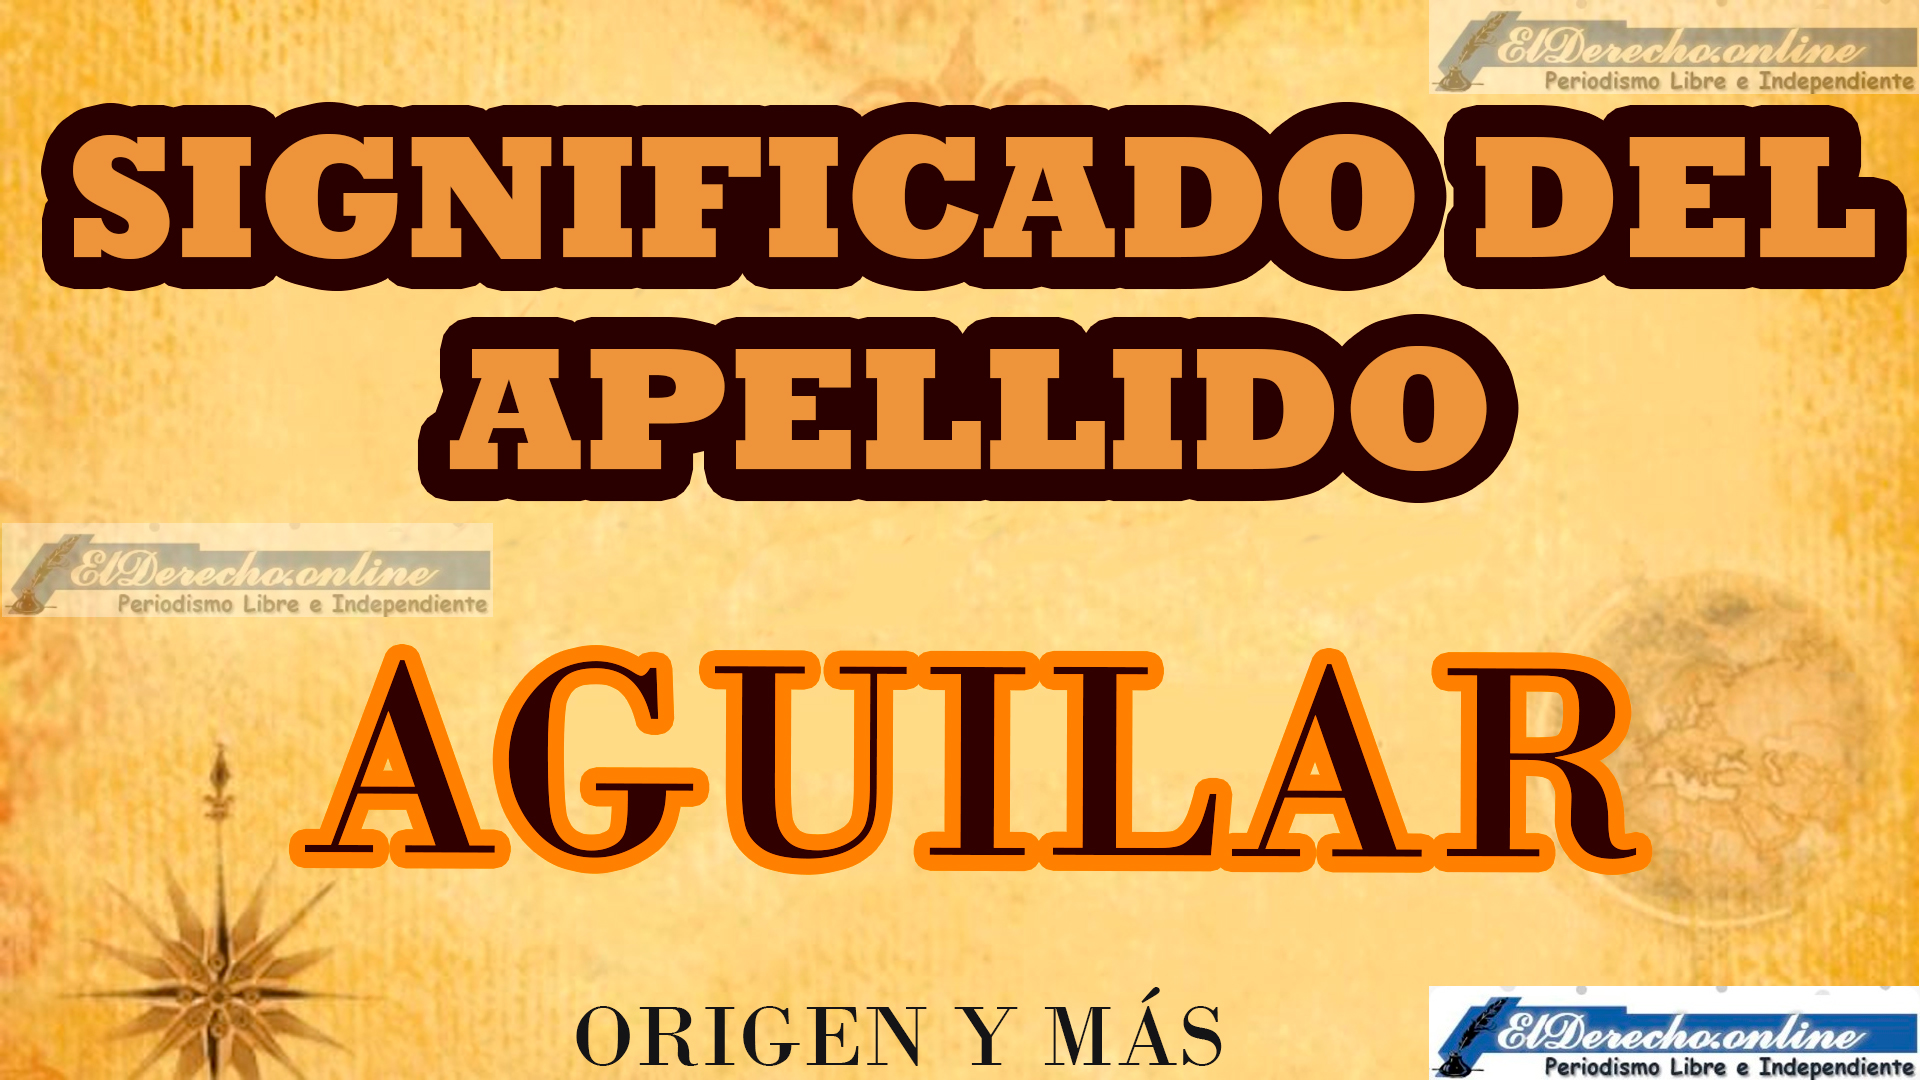 Significado del apellido Aguilar, Origen y más